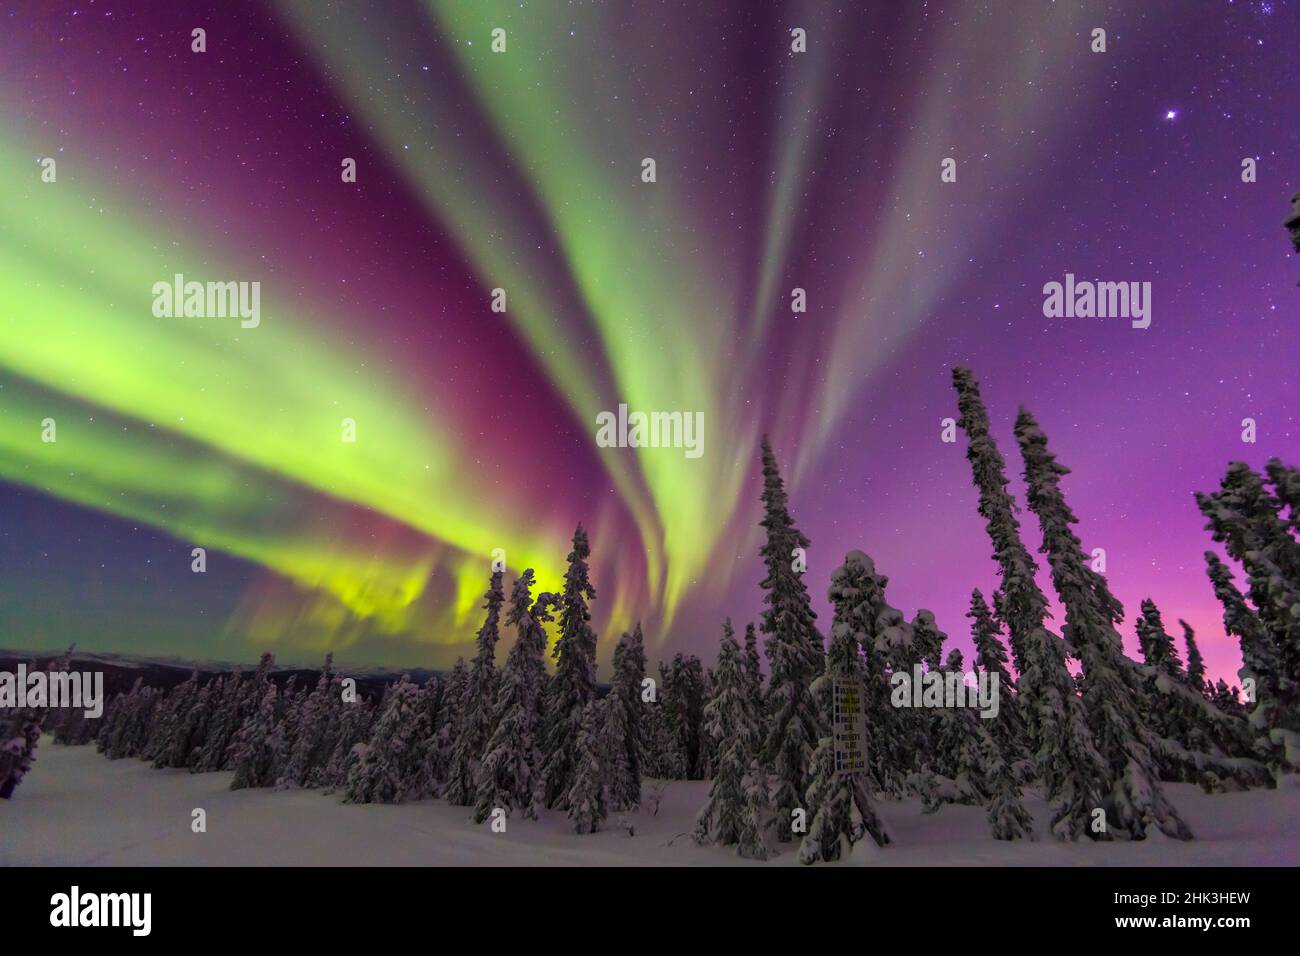 Aurora borealis, northern lights, near Fairbanks, Alaska Stock Photo